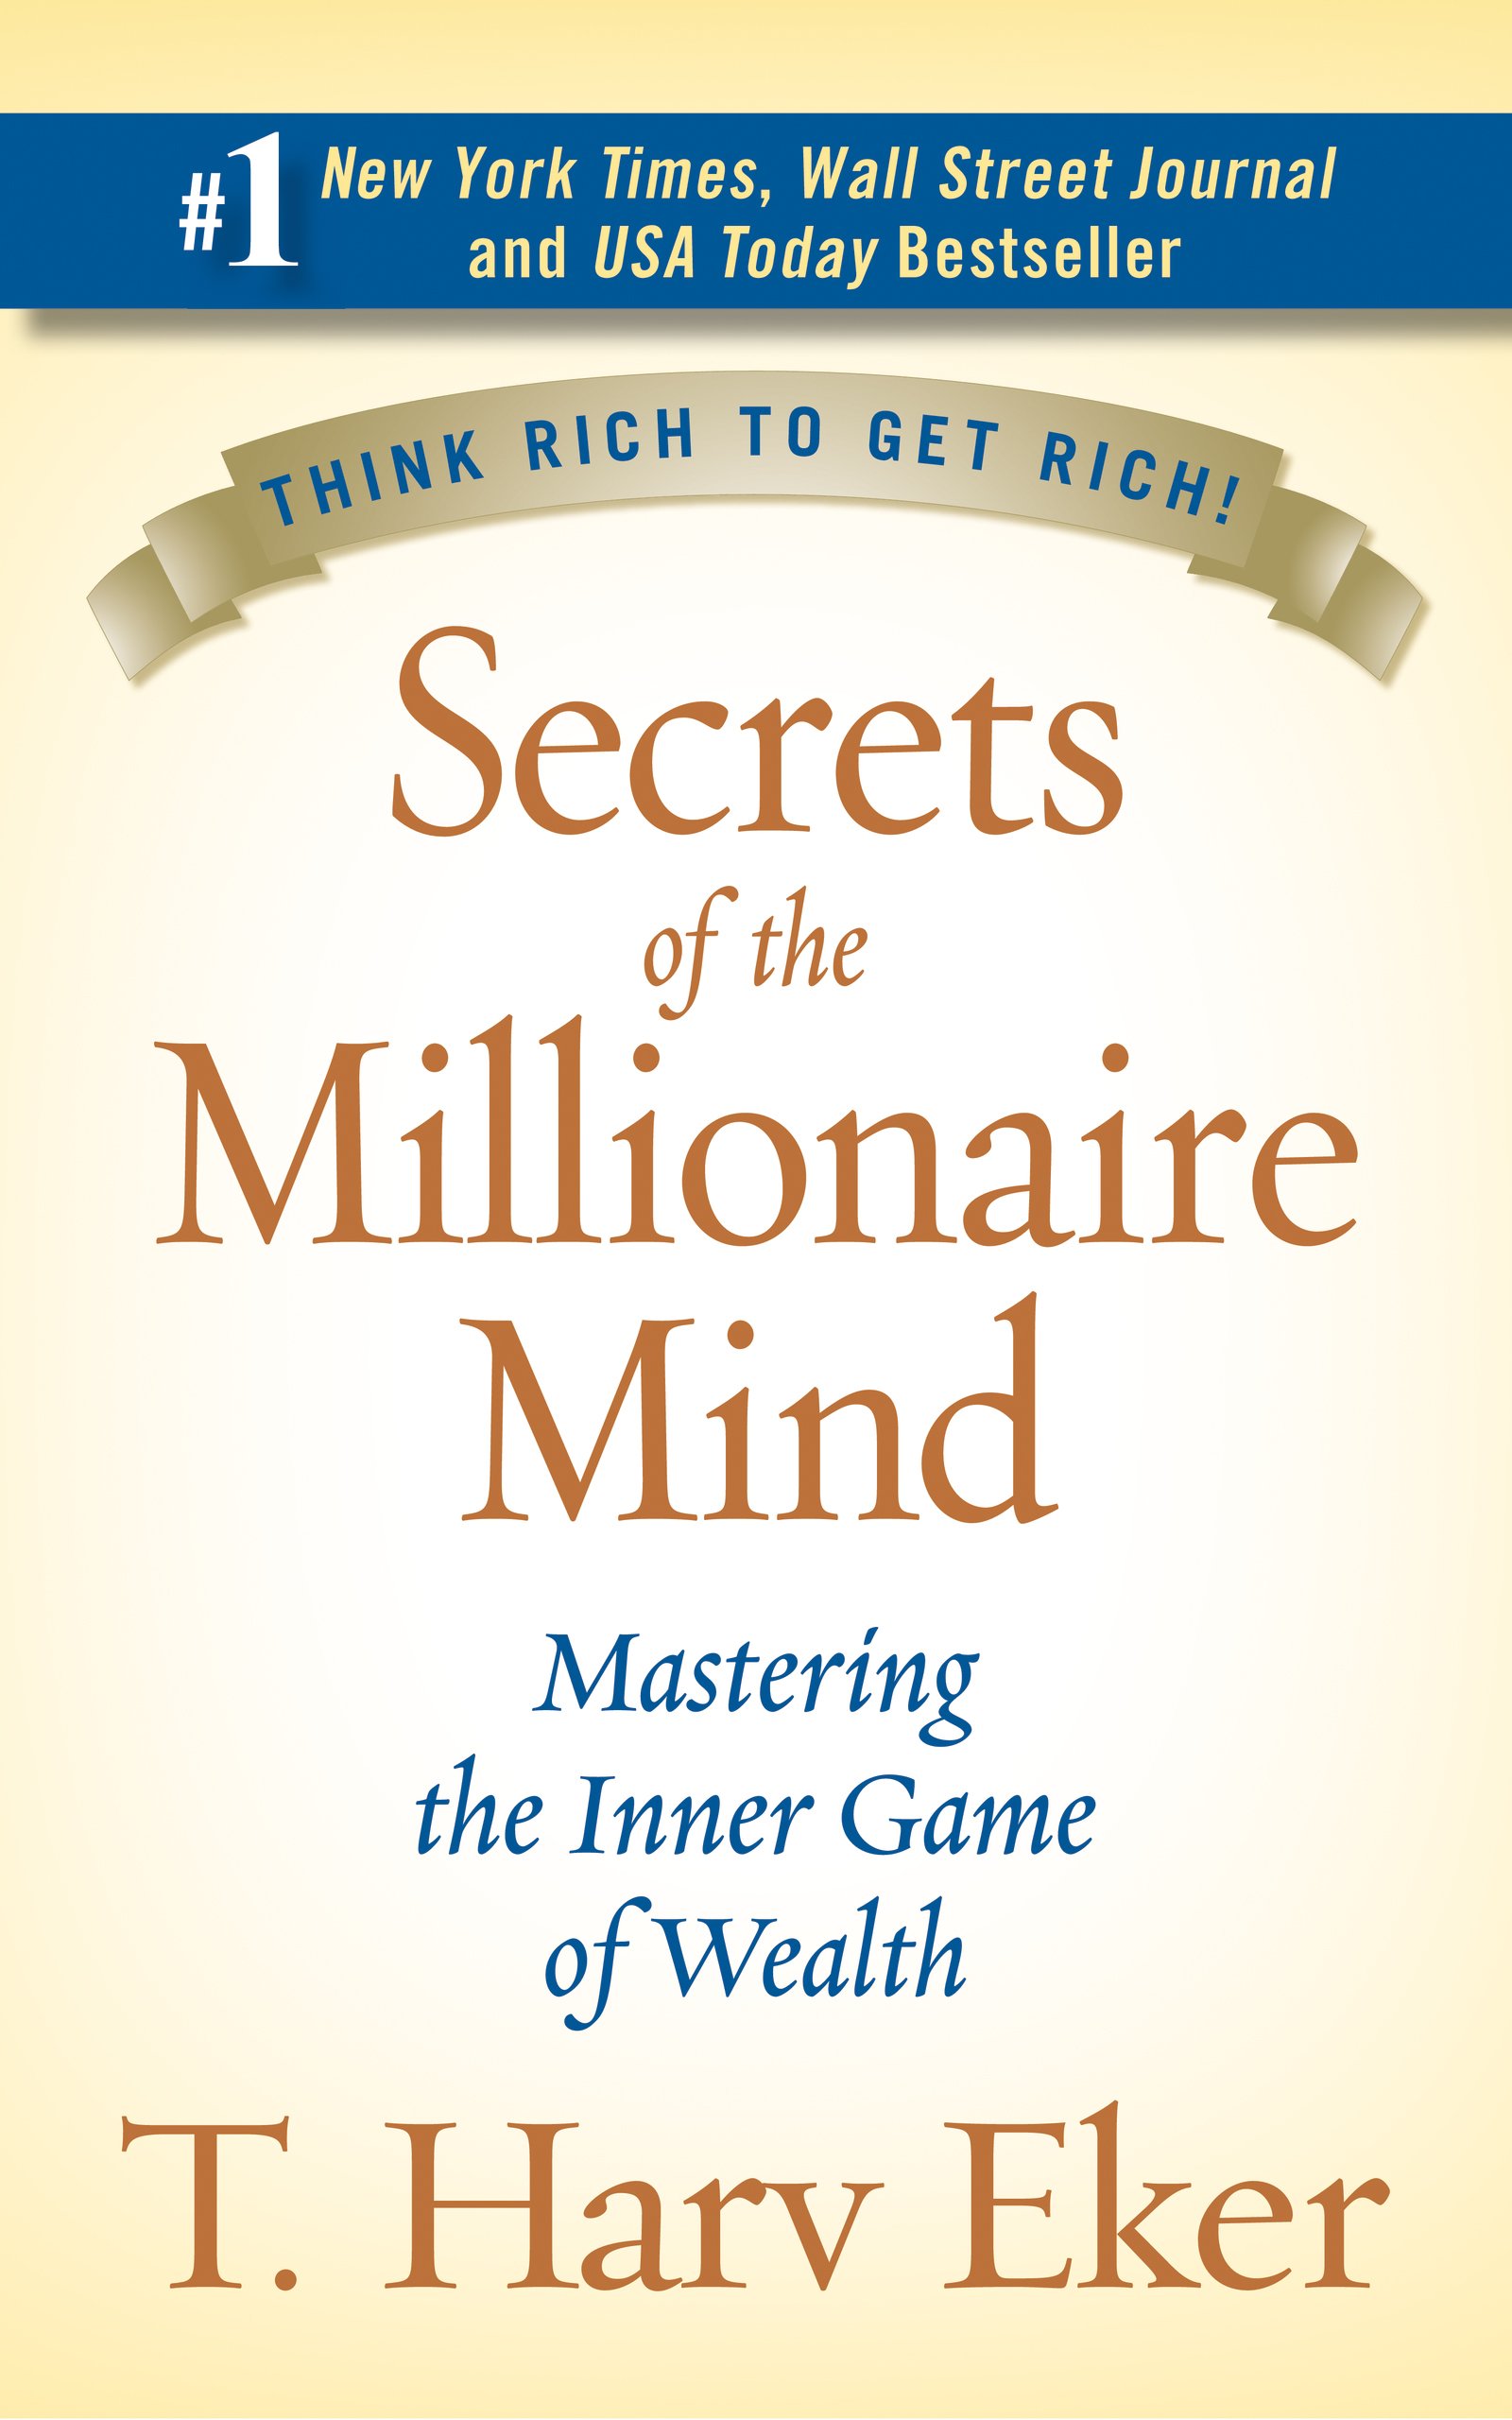 Secret of the millionaire mind